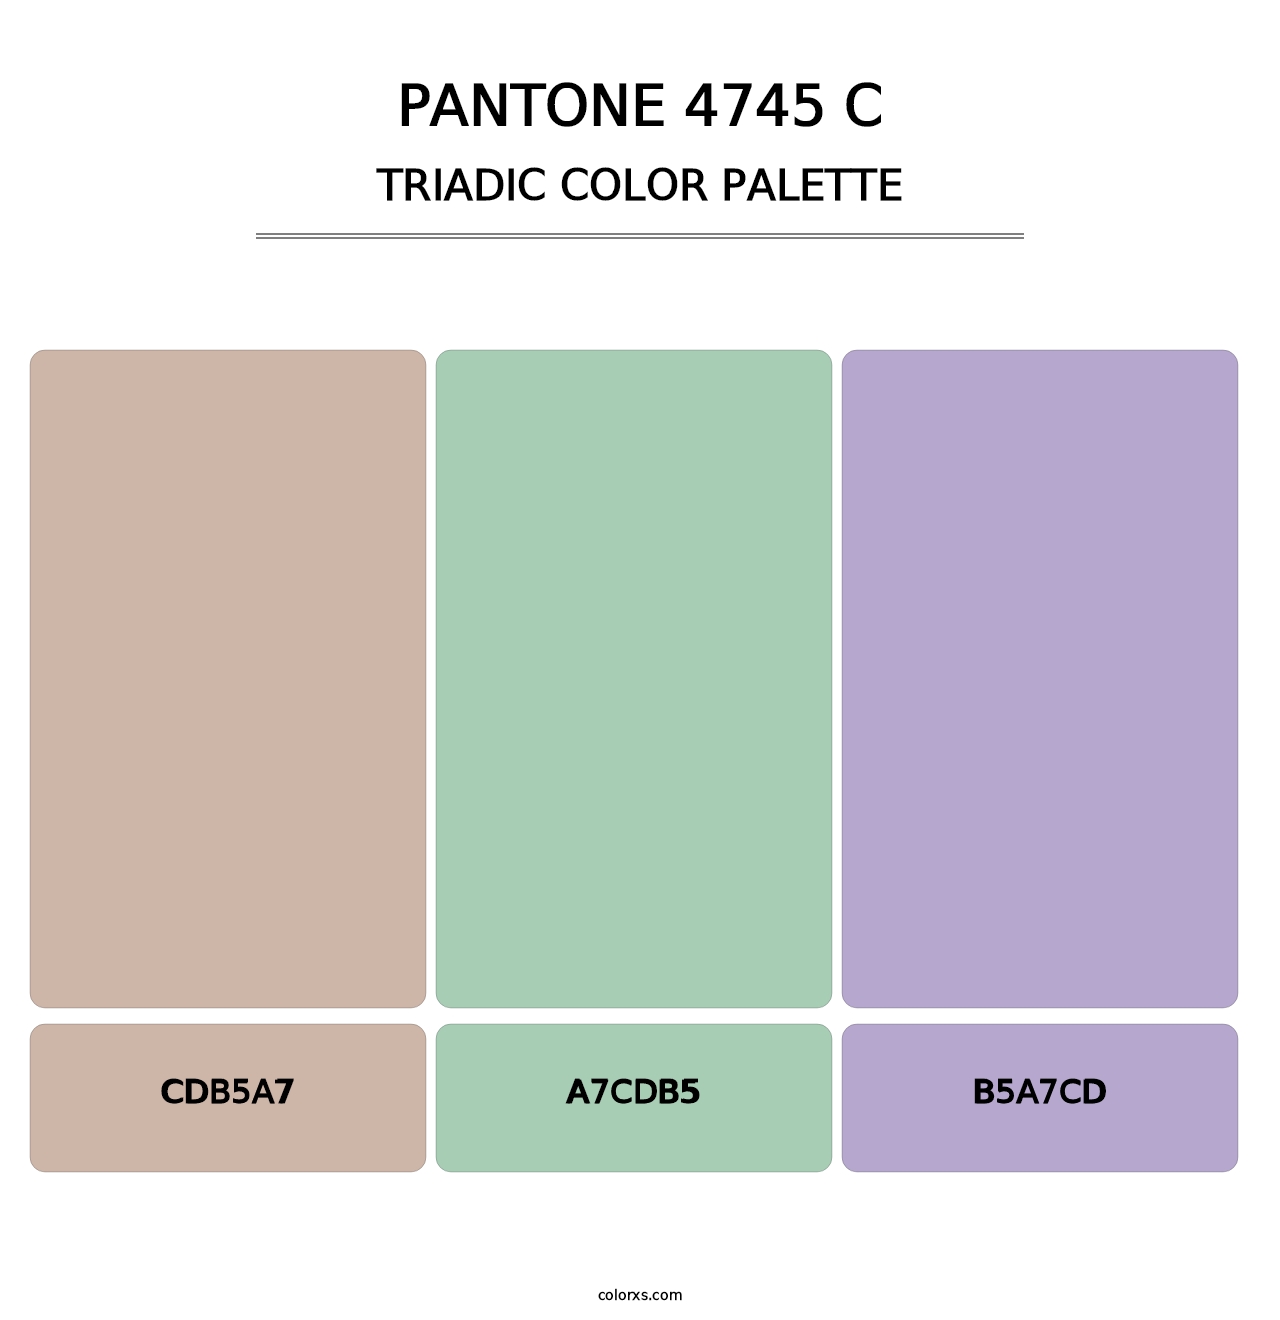 PANTONE 4745 C - Triadic Color Palette